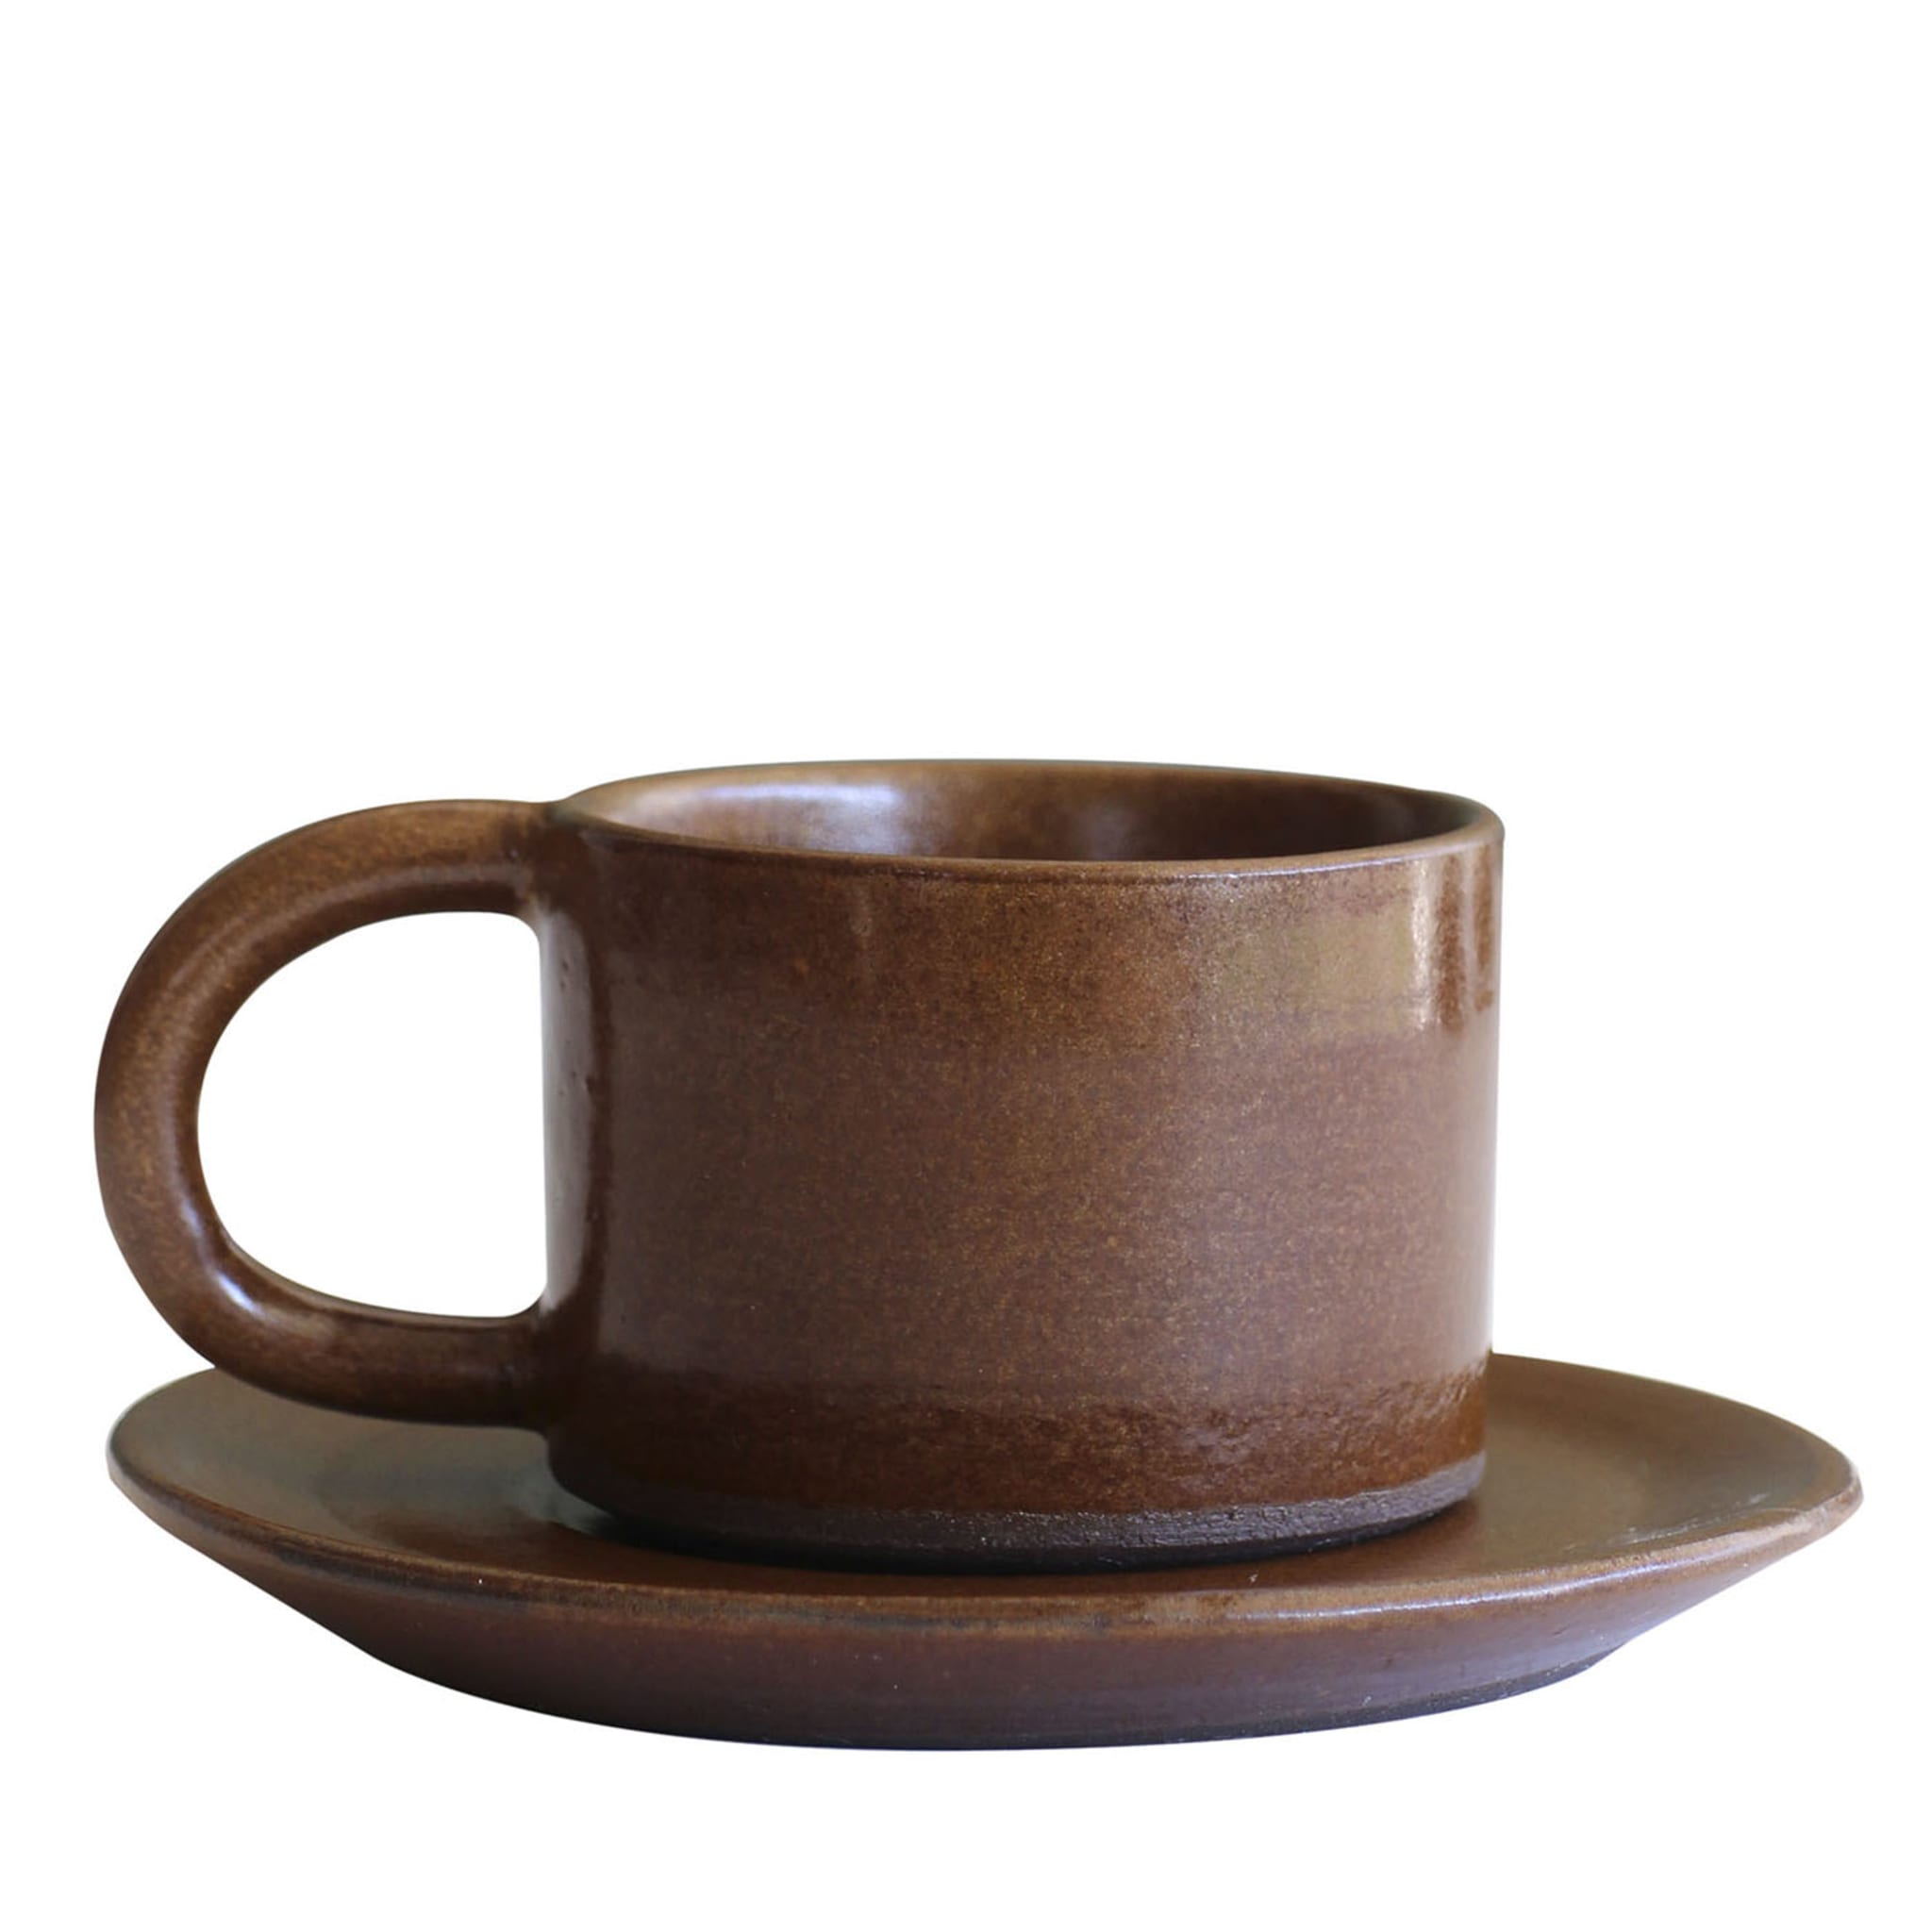 Juego marrón de 4 tazas de café expreso con platillos - Vista principal